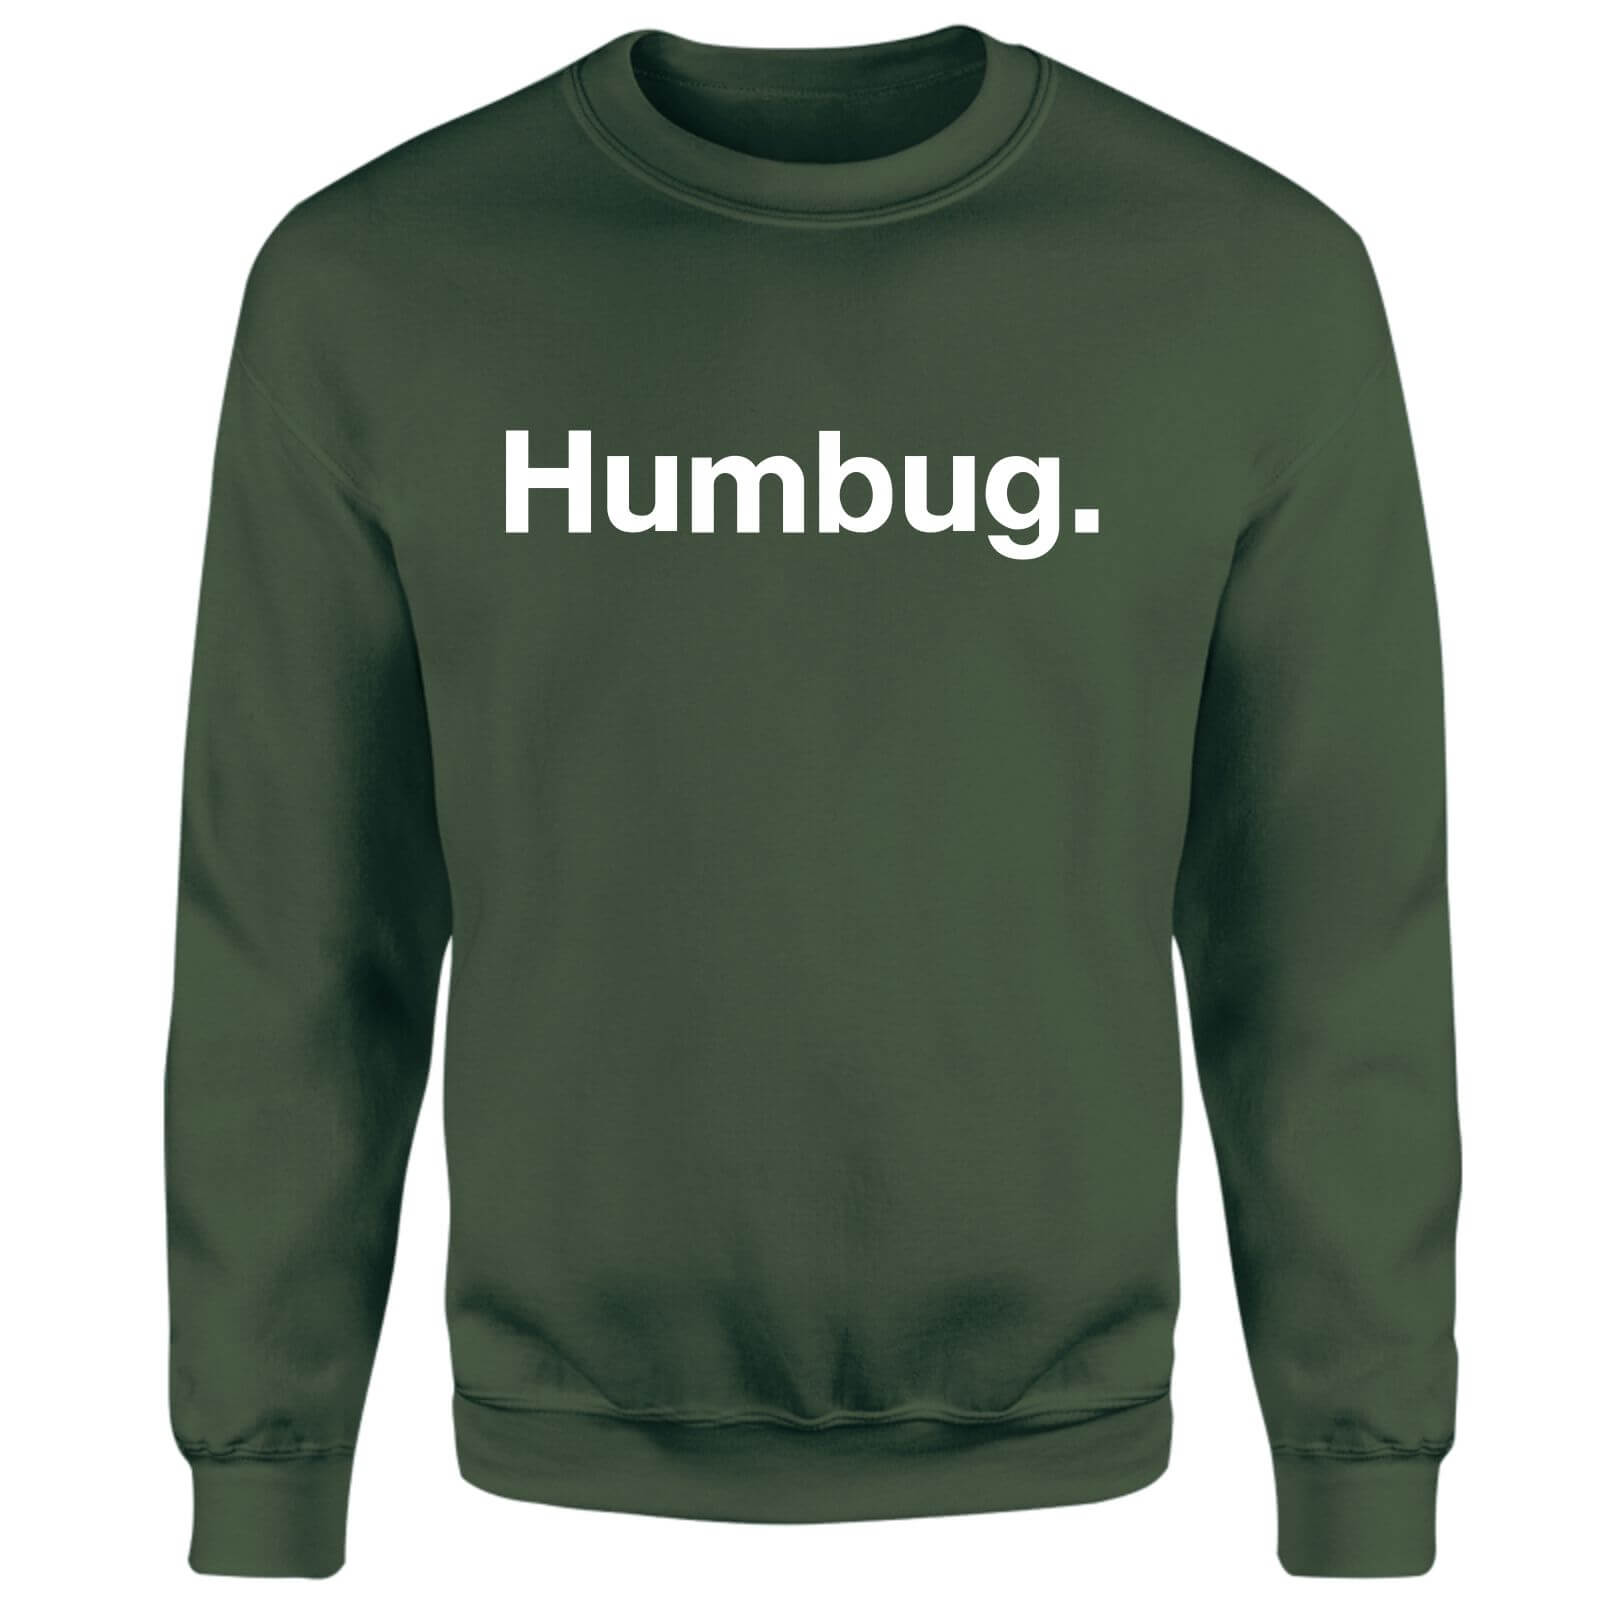 Christmas Humbug. Unisex Sweatshirt - Green - S - Green